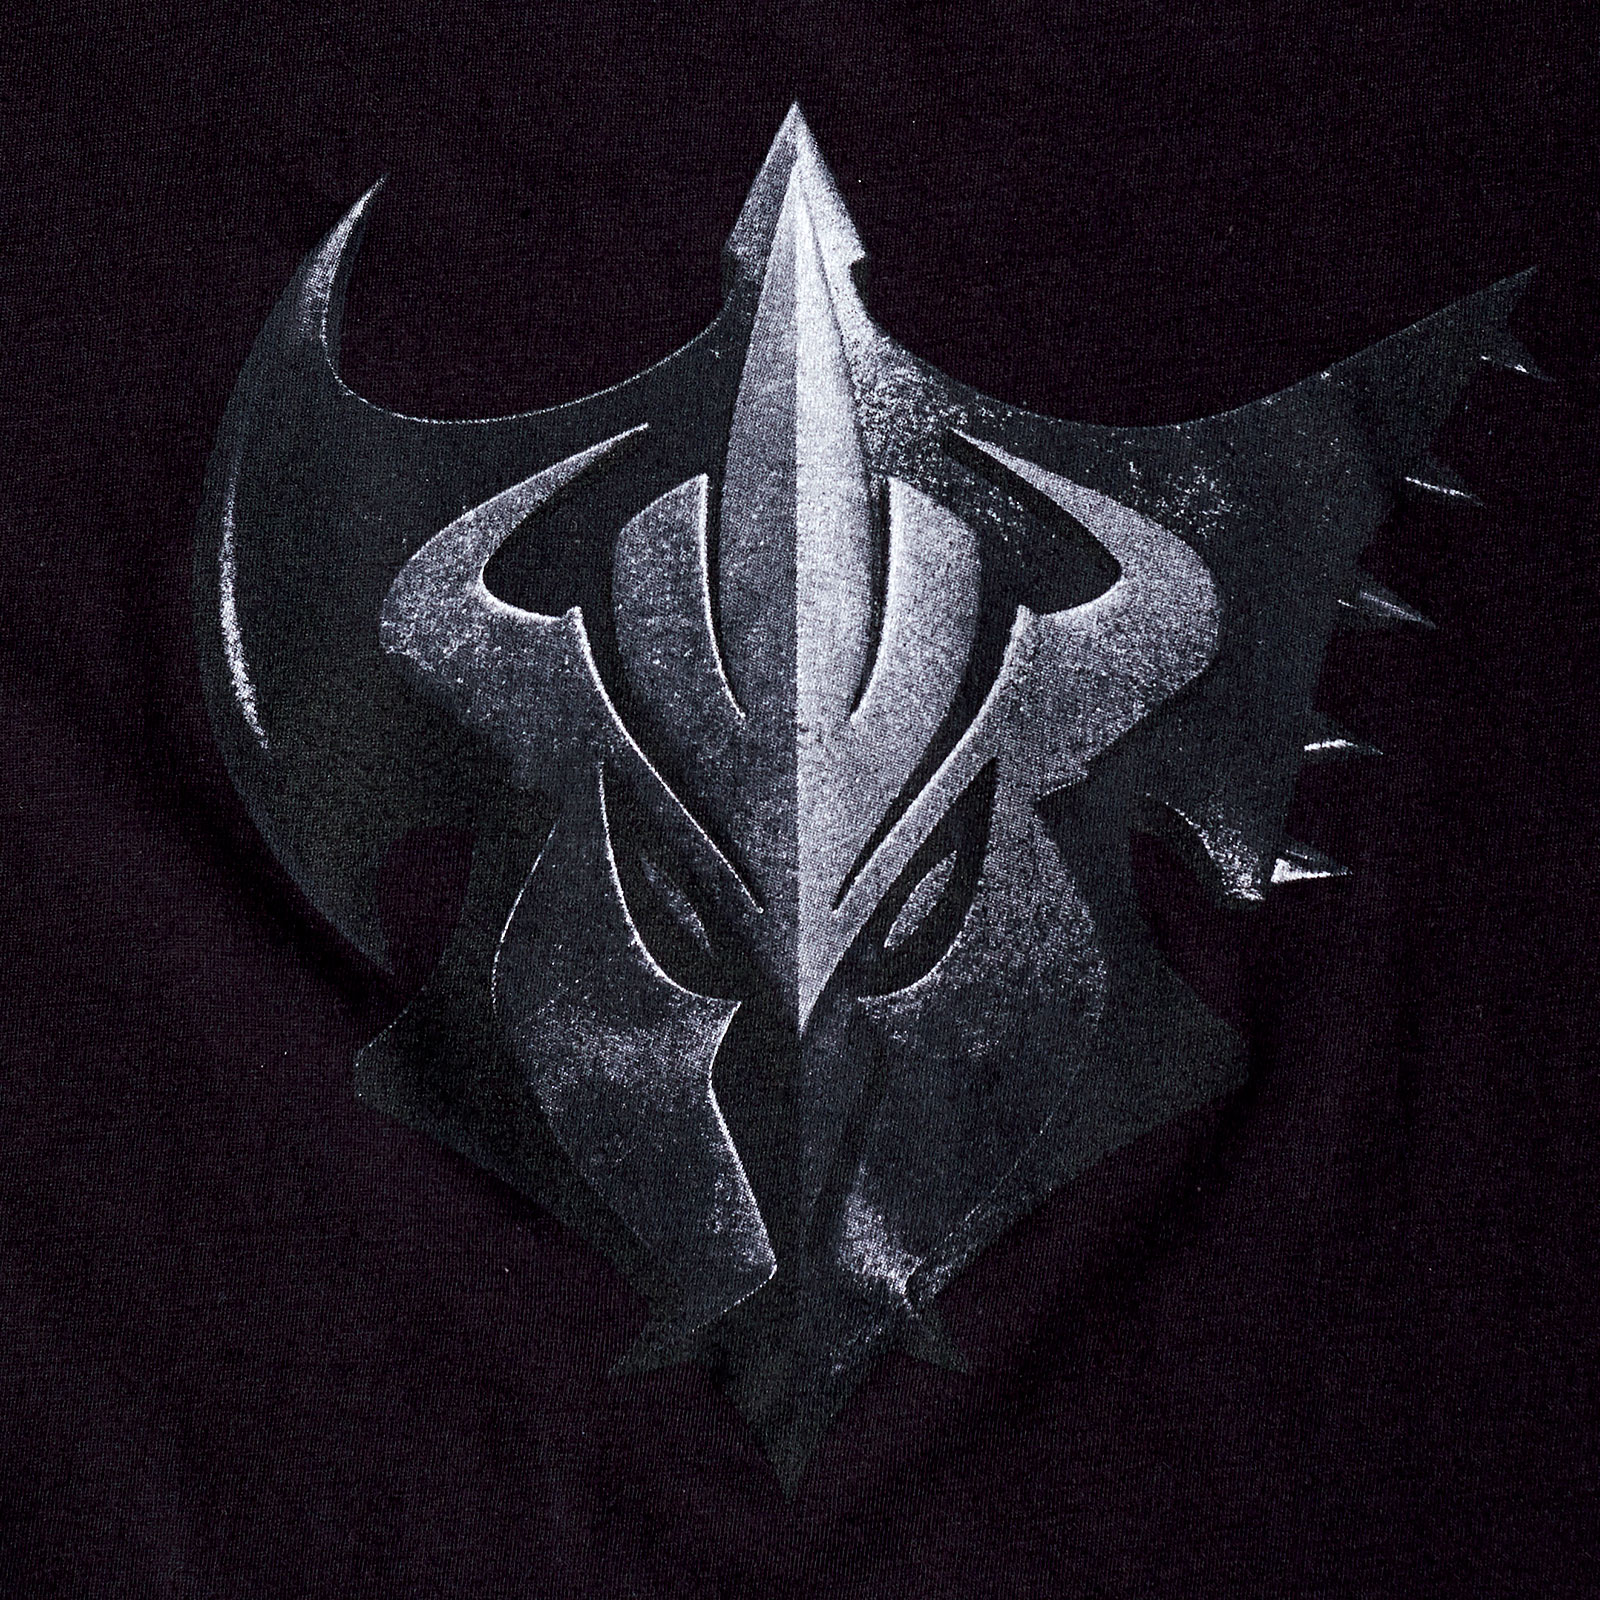 League of Legends - T-shirt Pentakill noir